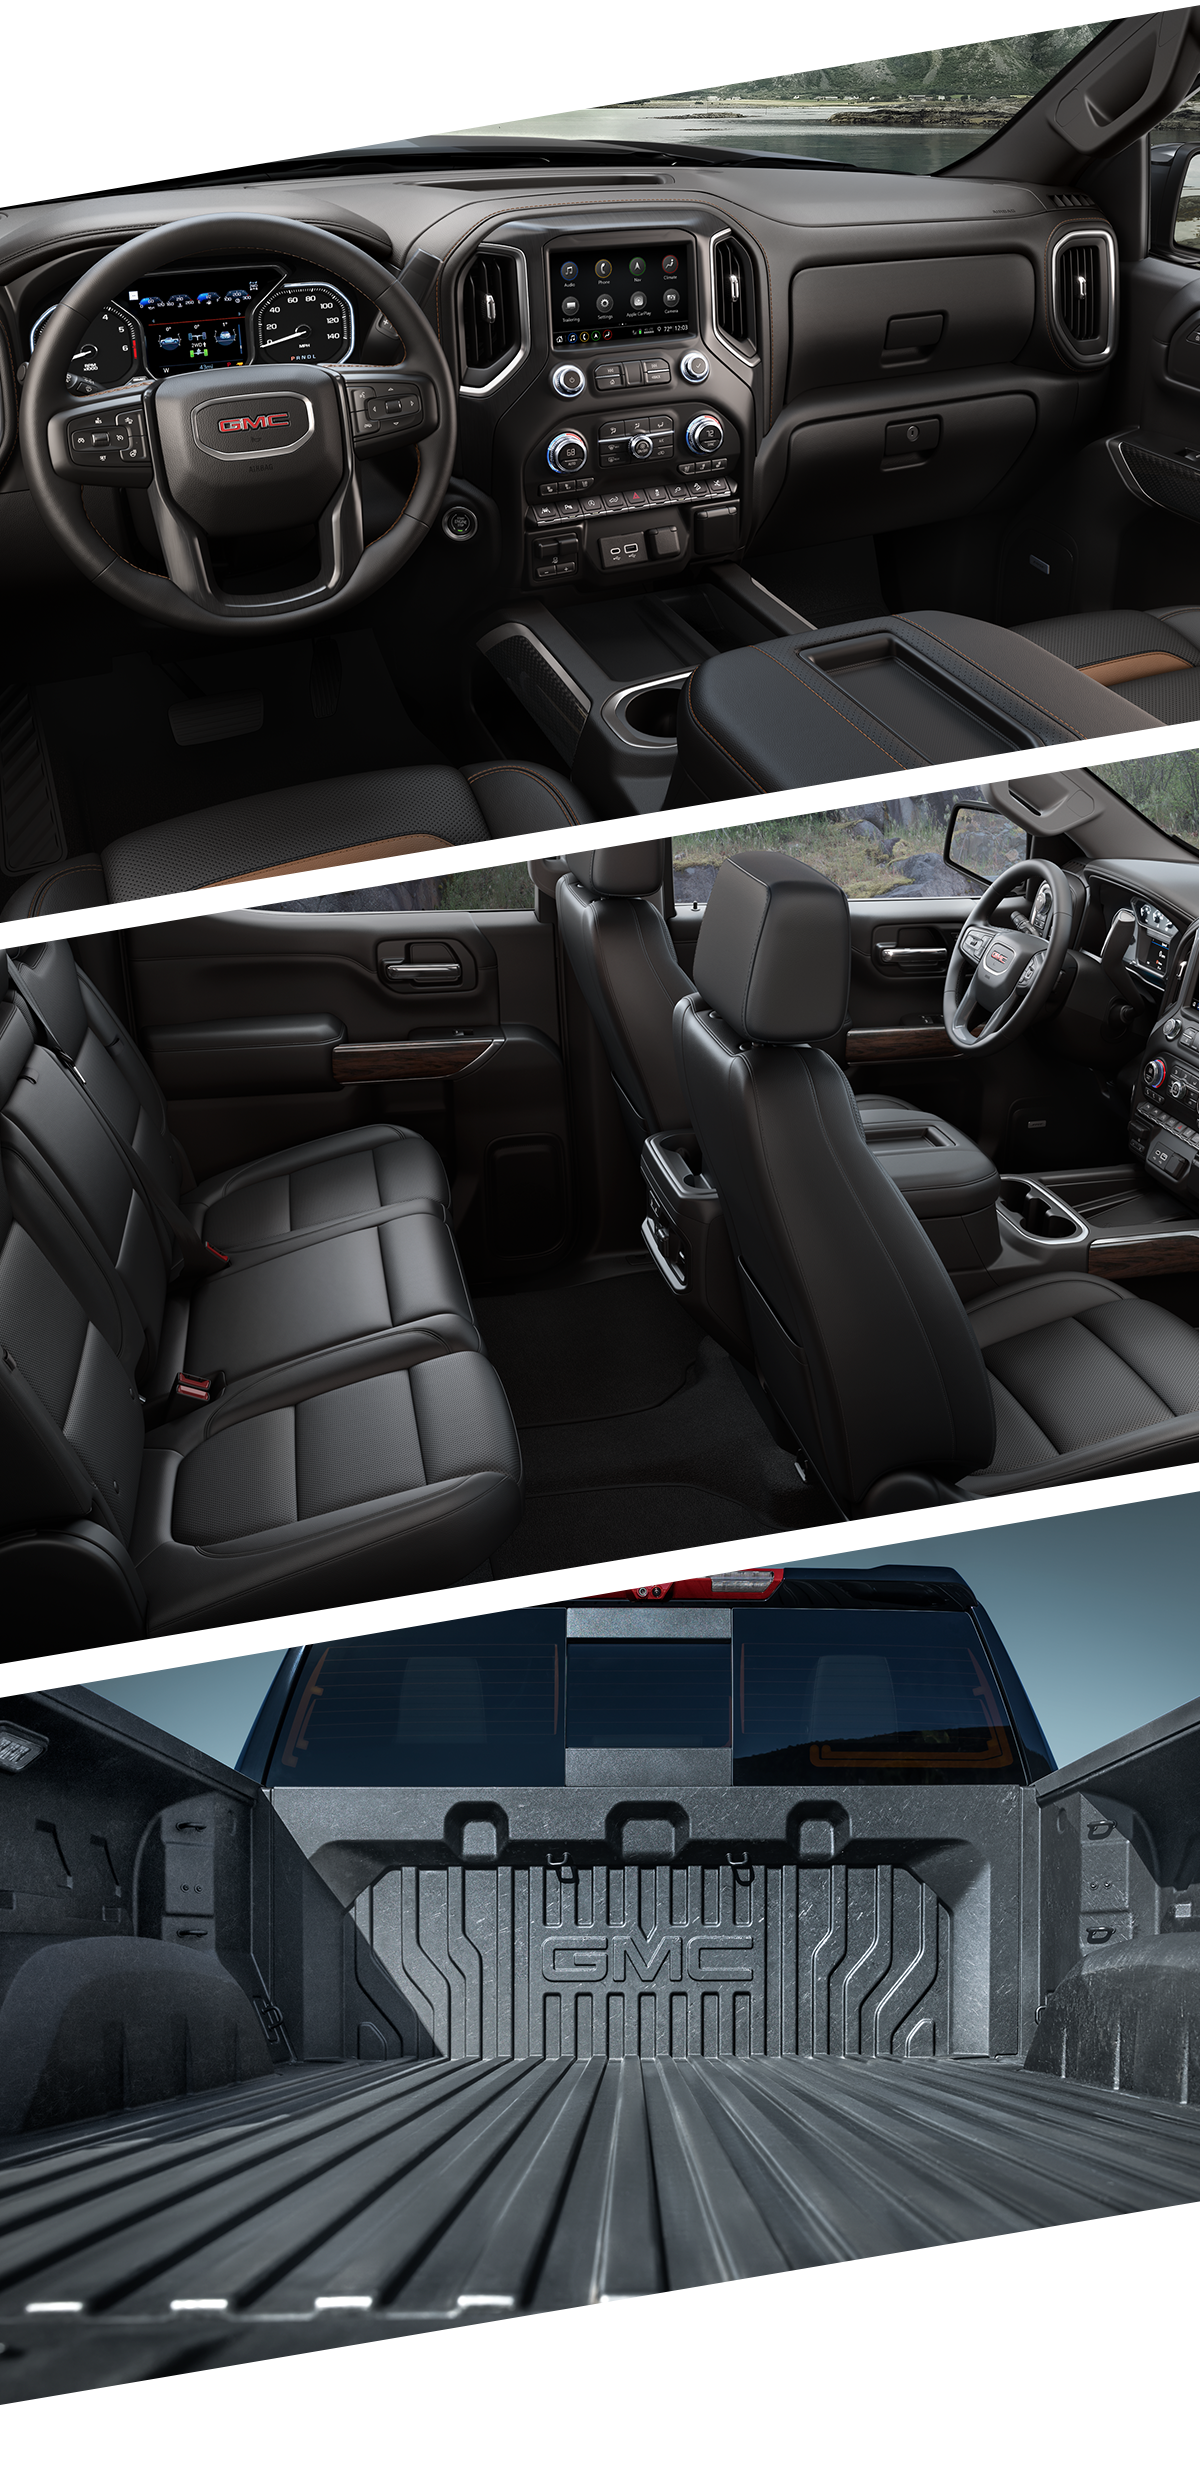 2021 Chevy Sierra 1500 Interior